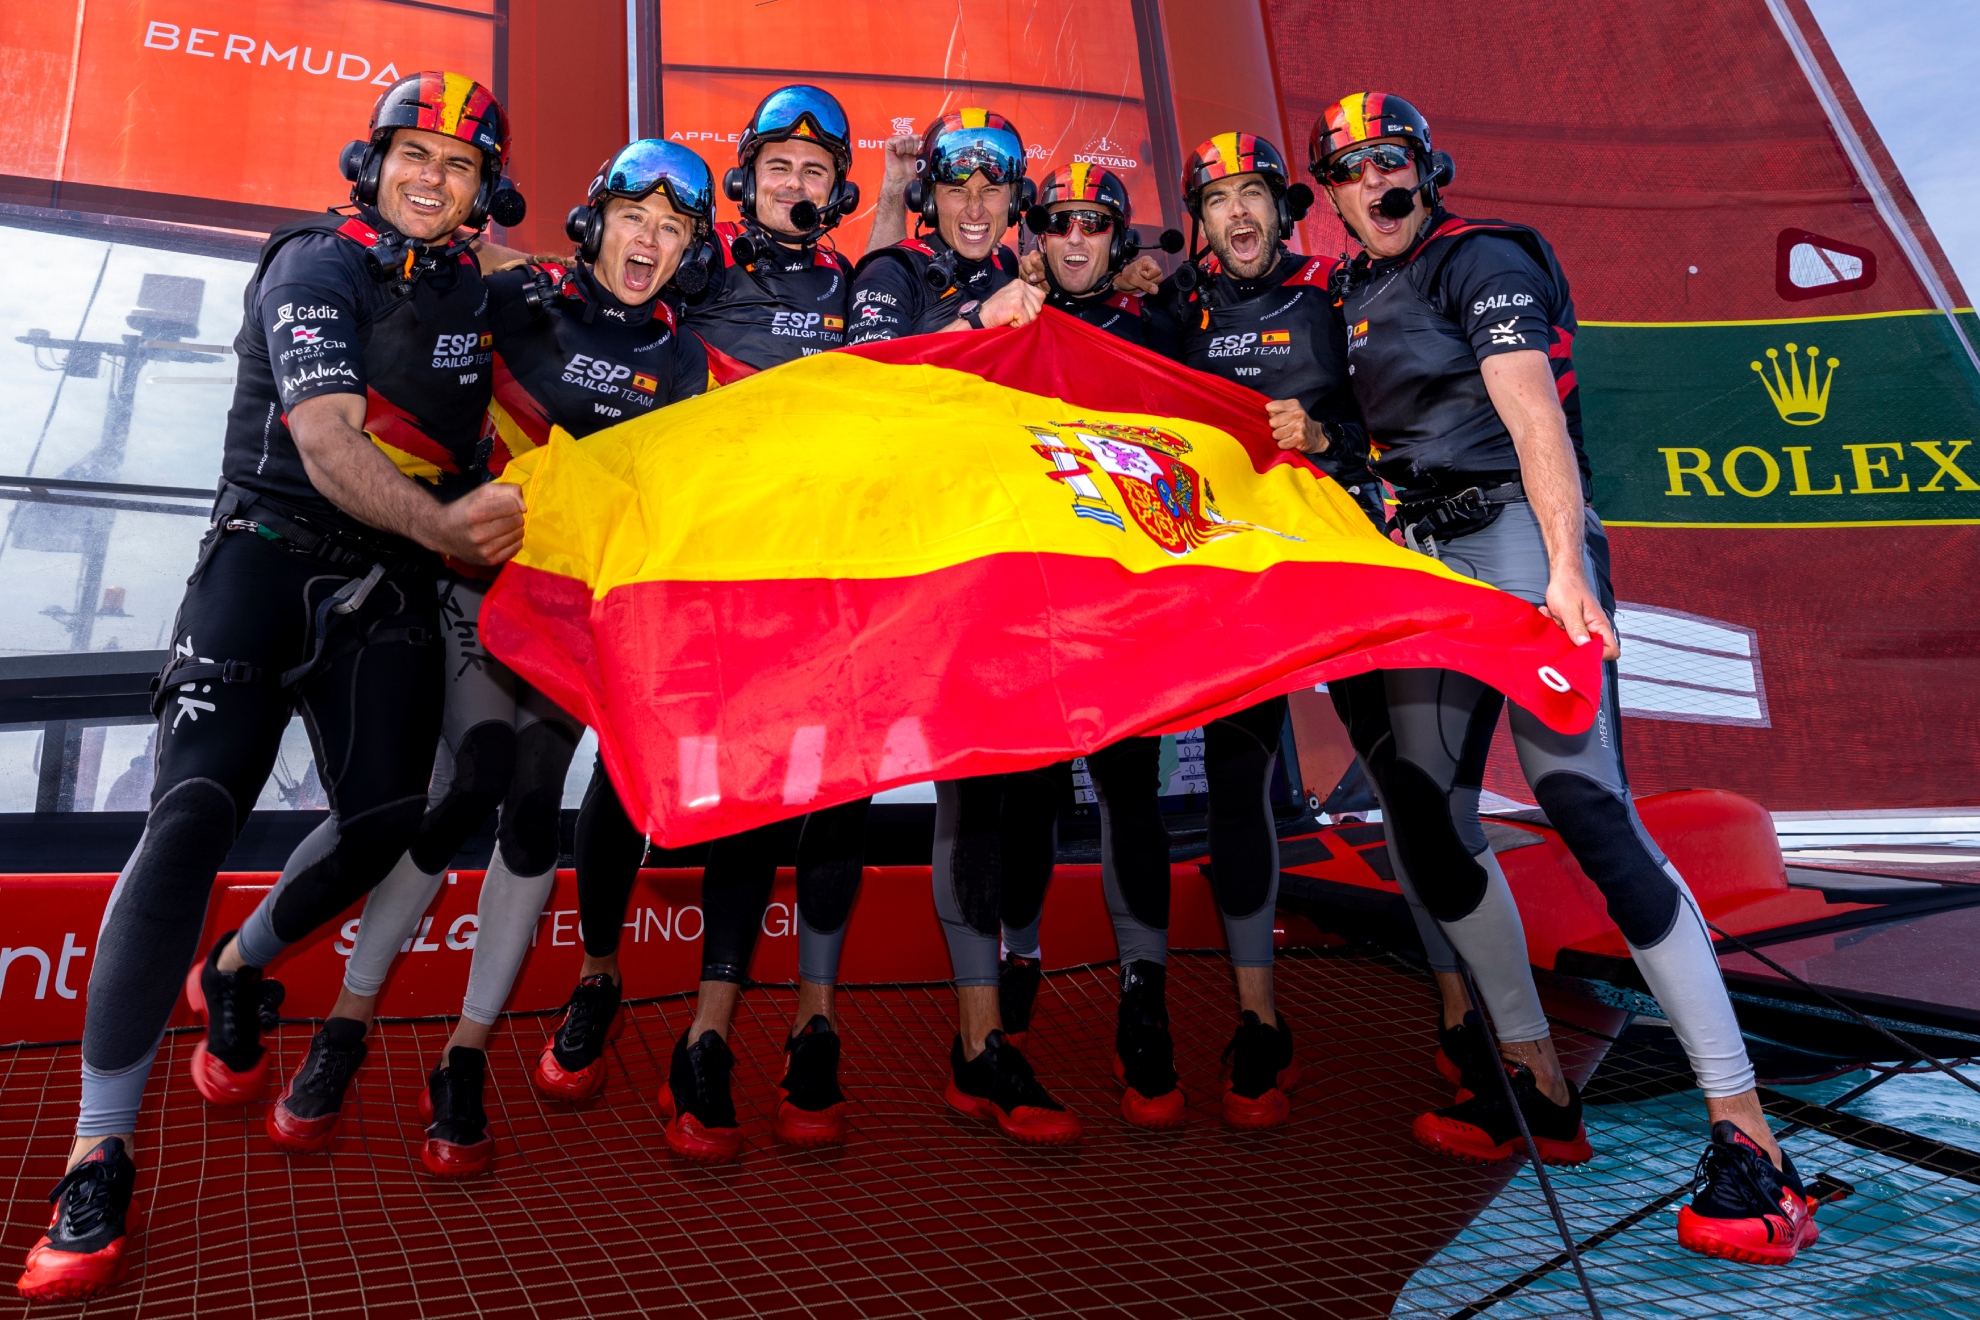 La tripulación española celebra su triunfo en el Gran Premio de Bermudas.